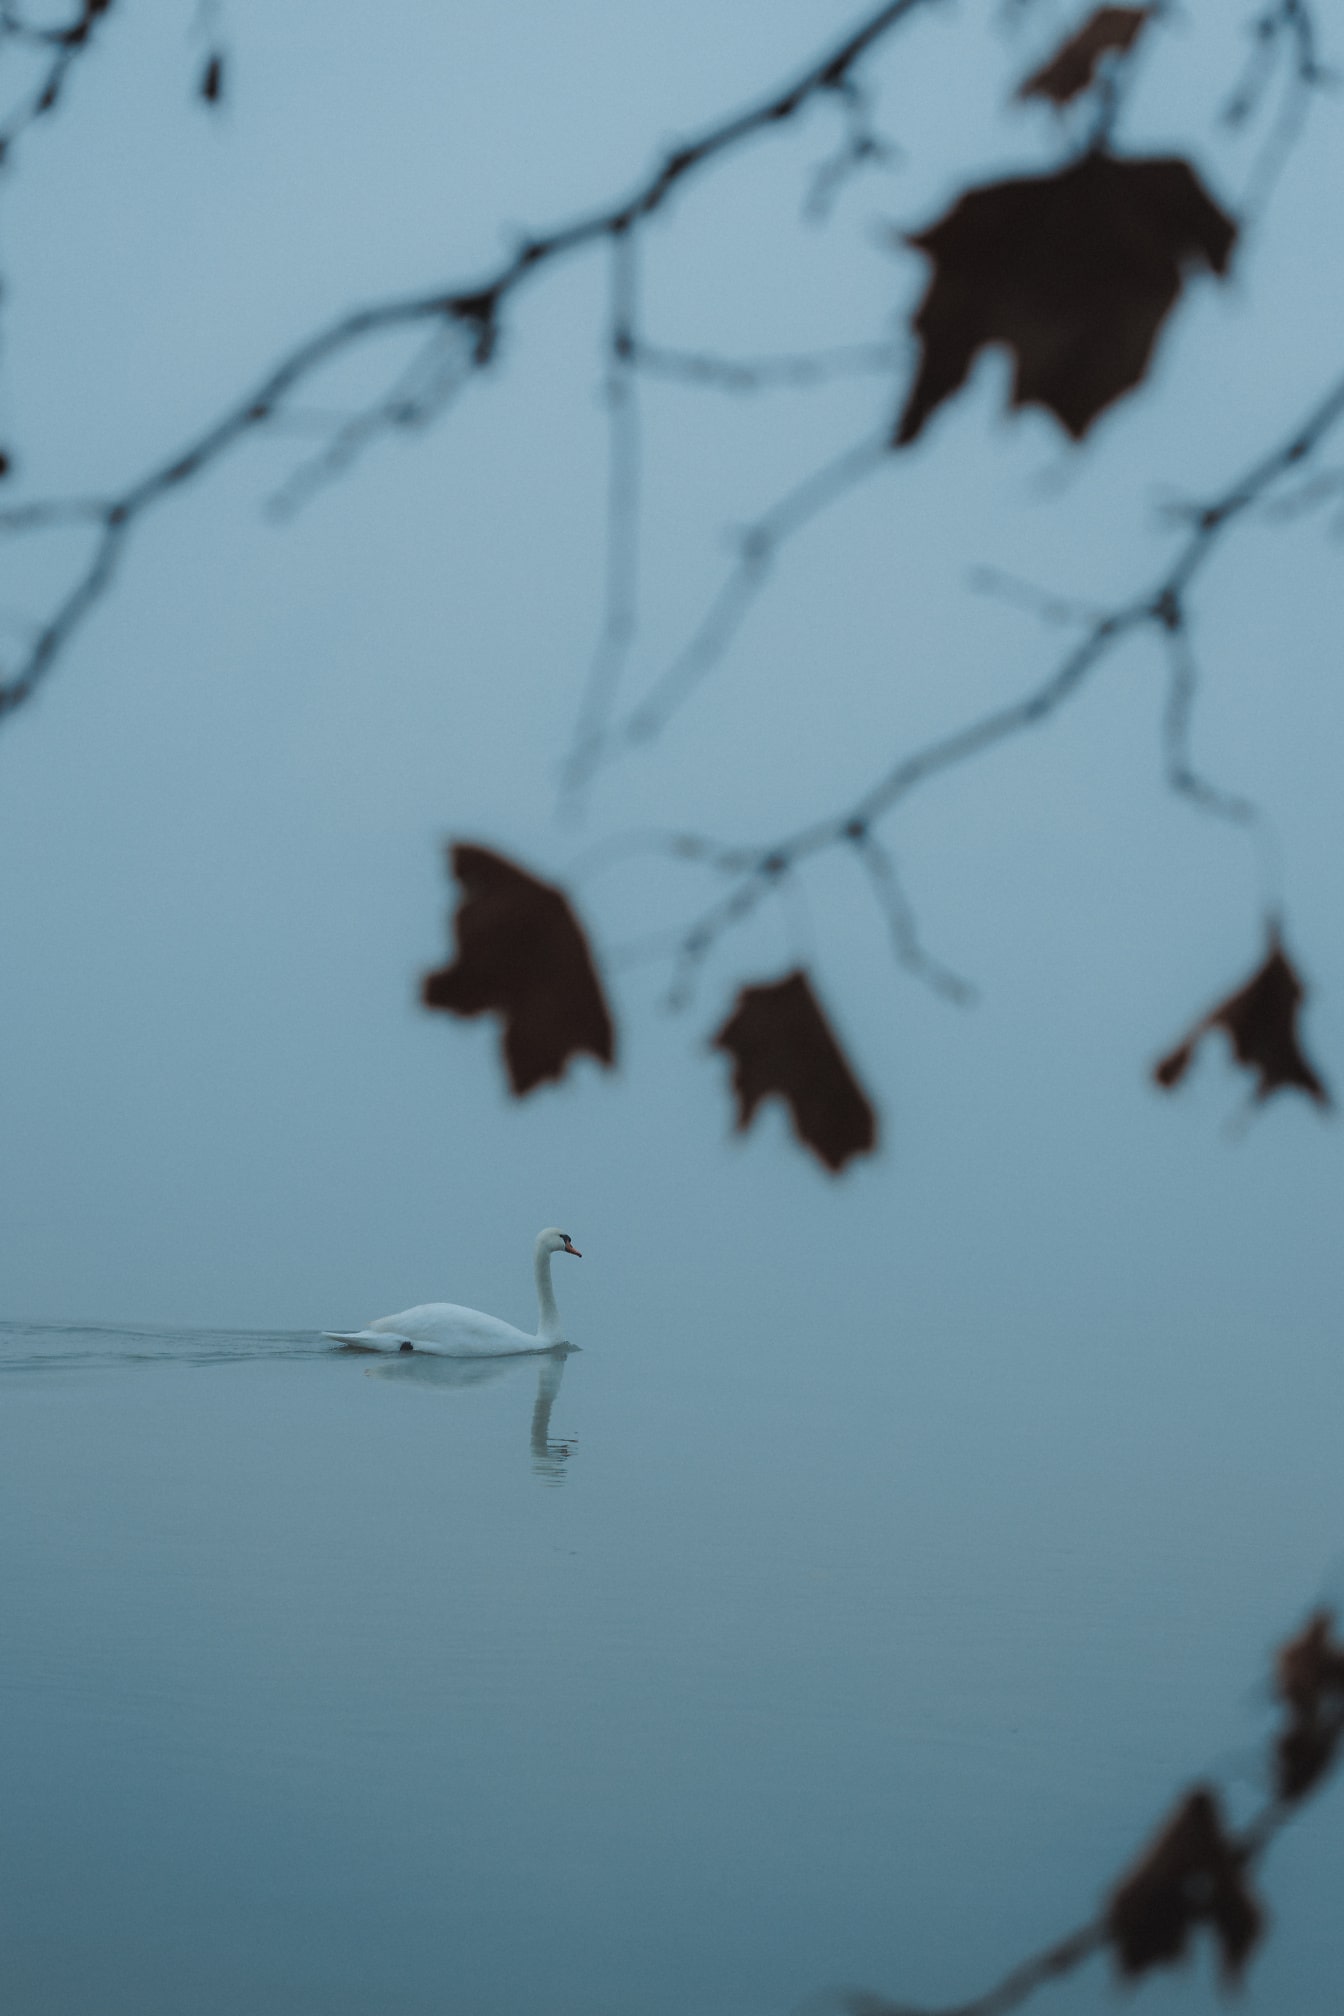 Labuť plávajúca sama vo vode na jesenný deň